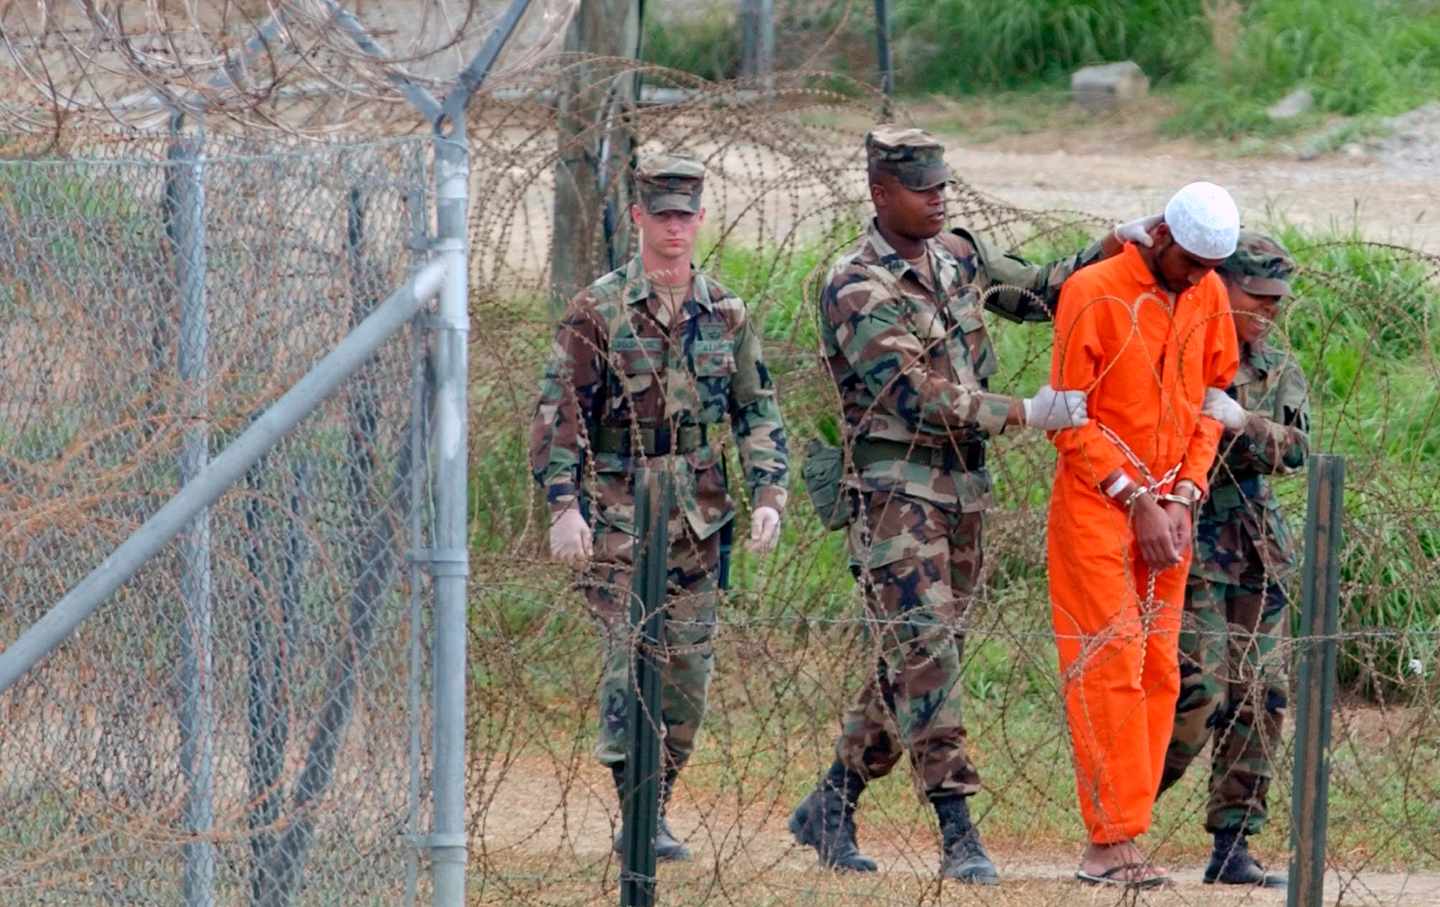 soldier leads prisoner in Guant´namo Bay